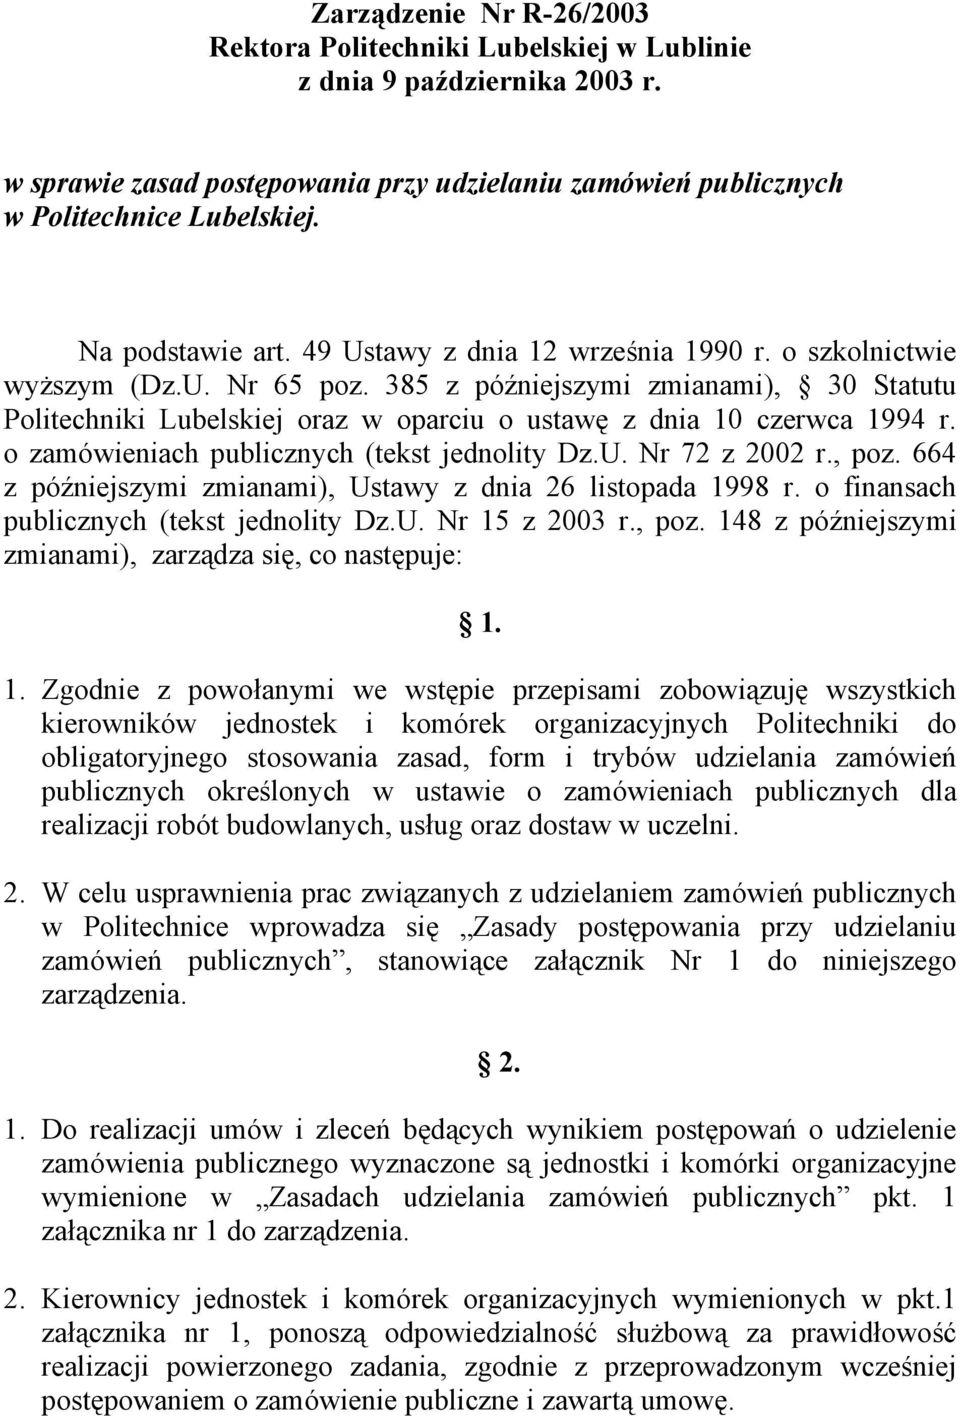 385 z późniejszymi zmianami), 30 Statutu Politechniki Lubelskiej oraz w oparciu o ustawę z dnia 10 czerwca 1994 r. o zamówieniach publicznych (tekst jednolity Dz.U. Nr 72 z 2002 r., poz.